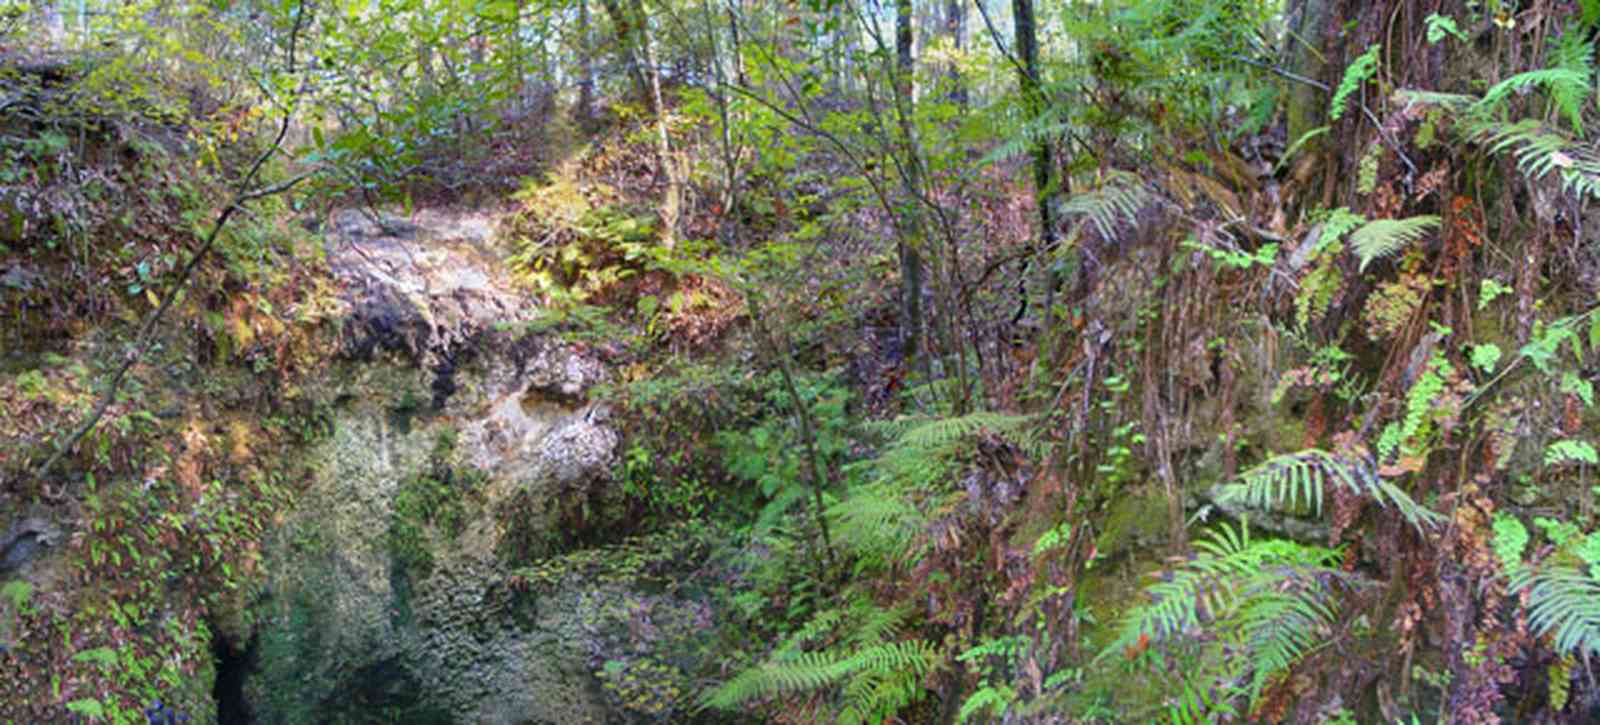 Chipley:-Falling-Waters-State-Park_02.jpg:  waterfalls, fern, sink hole, limestone rocks, upland pine forest